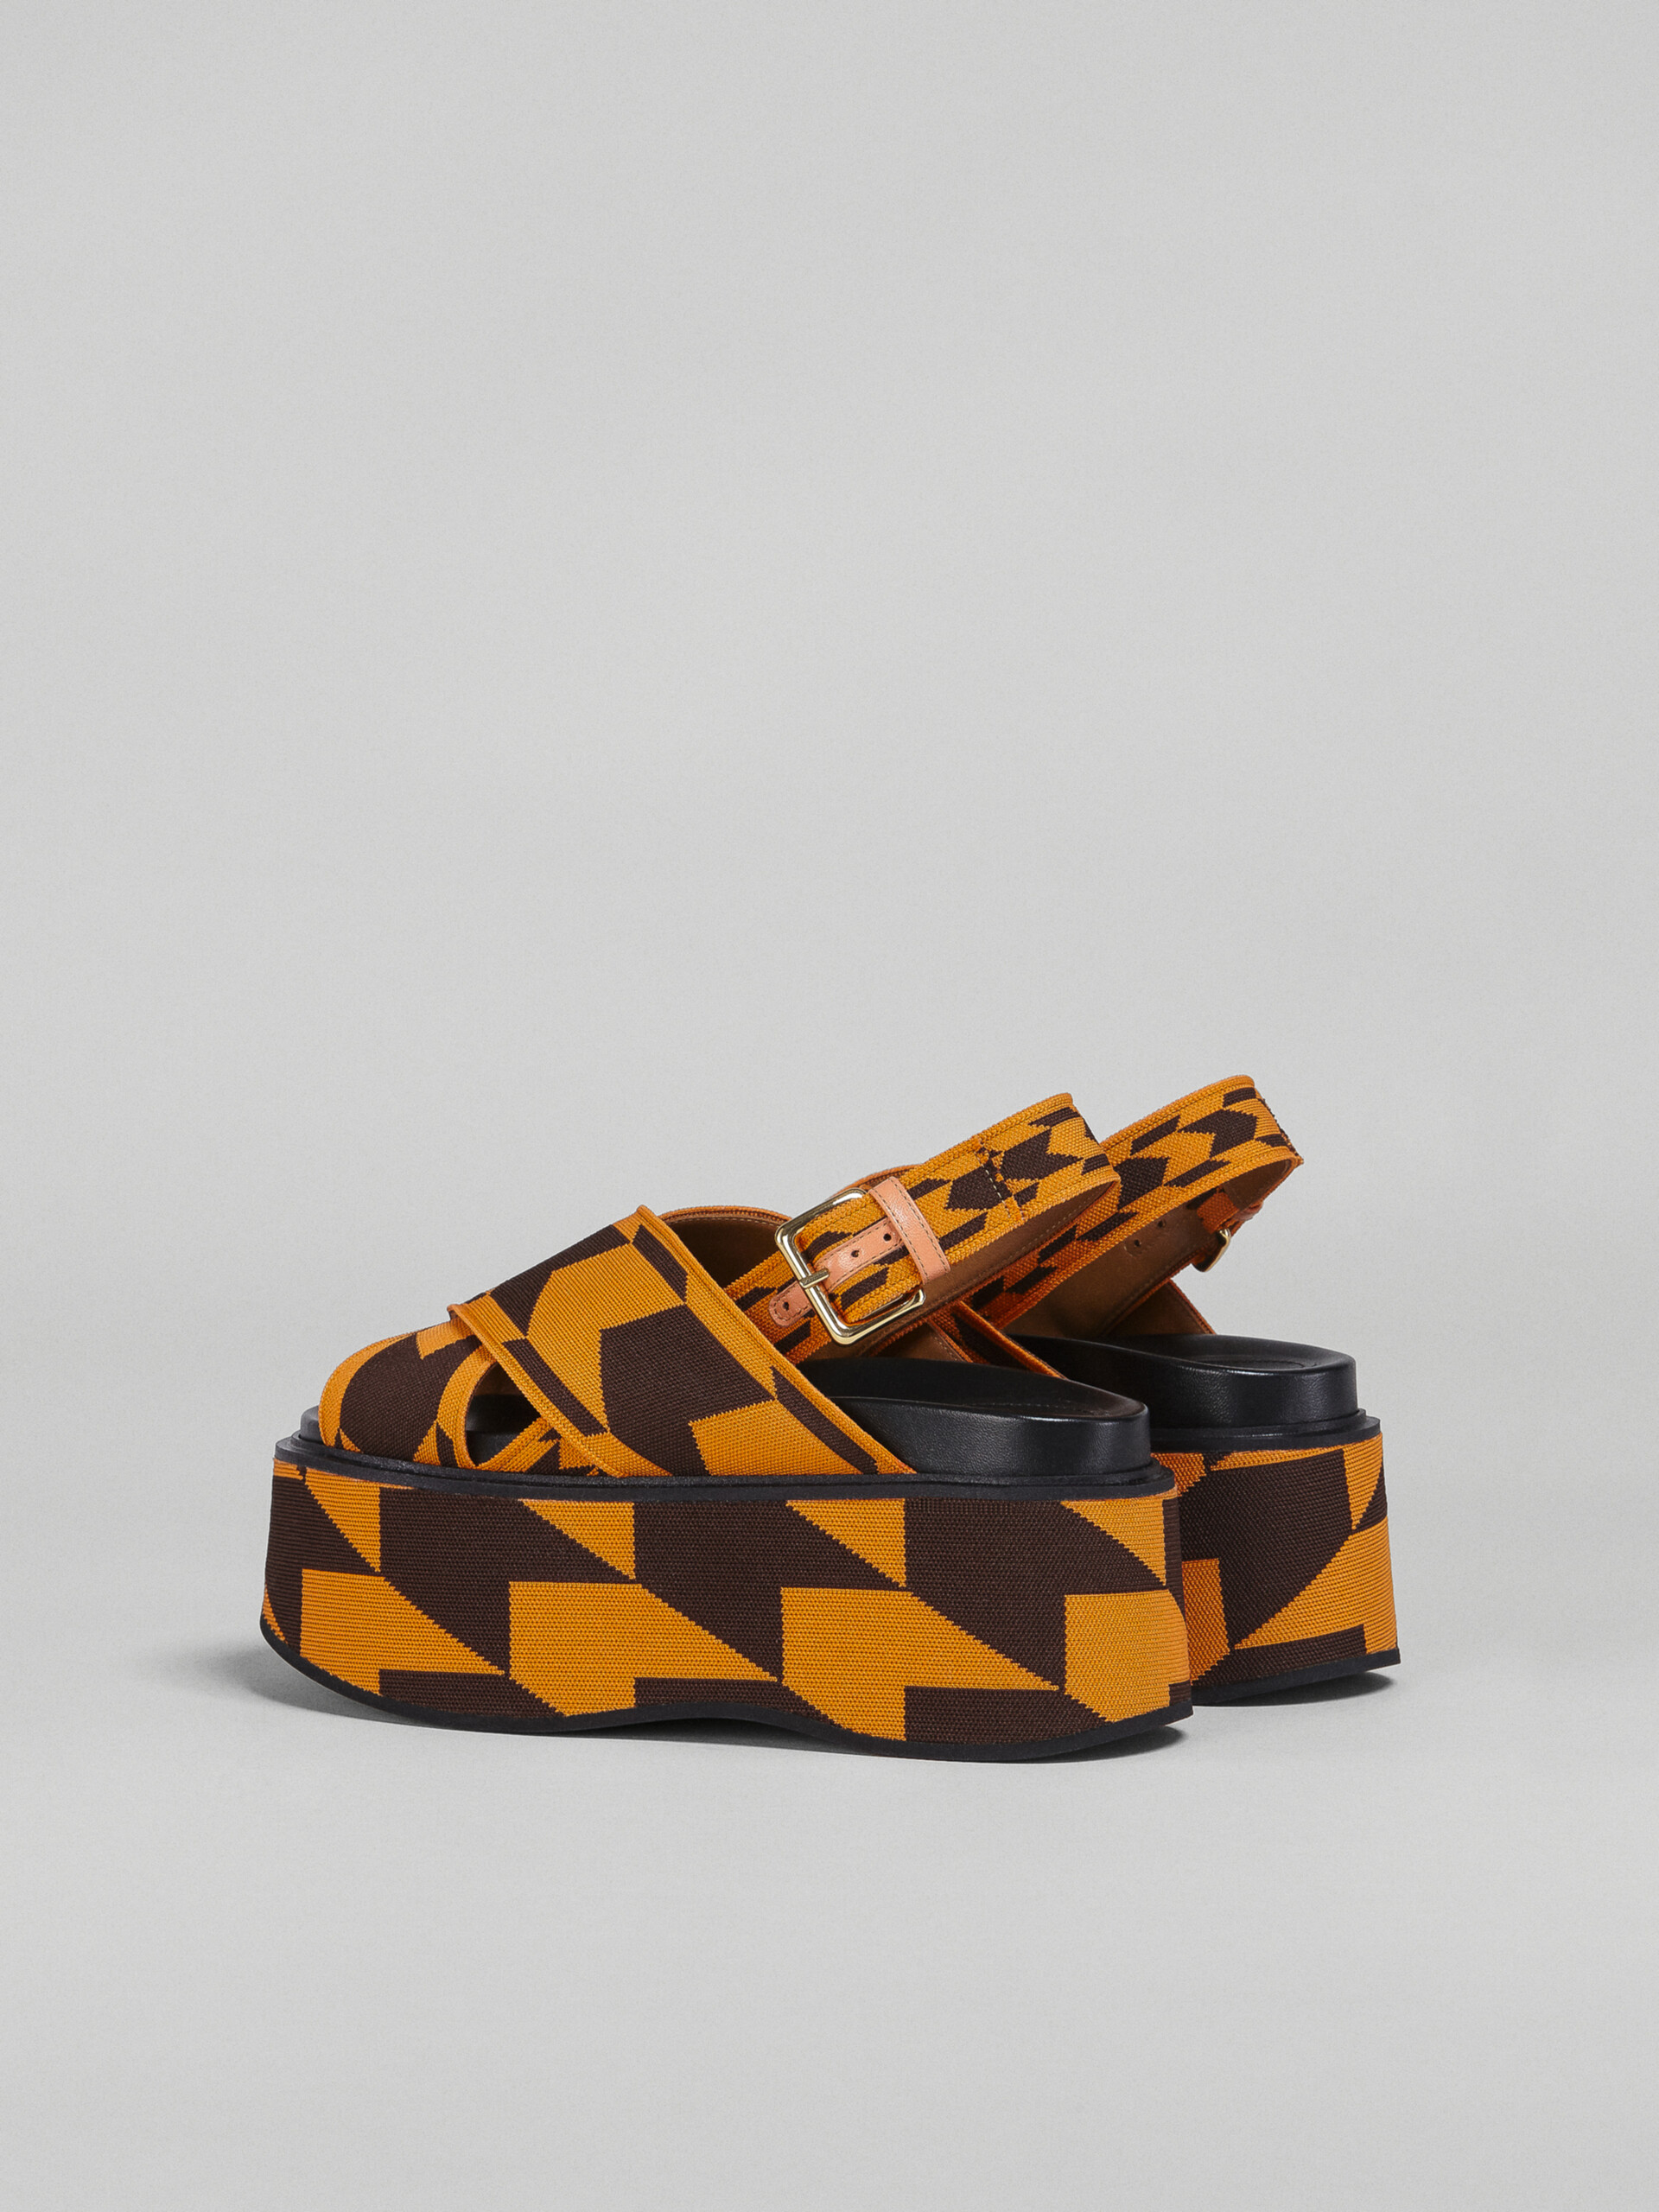 Houndstooth jacquard wedge sandal - Sandals - Image 3